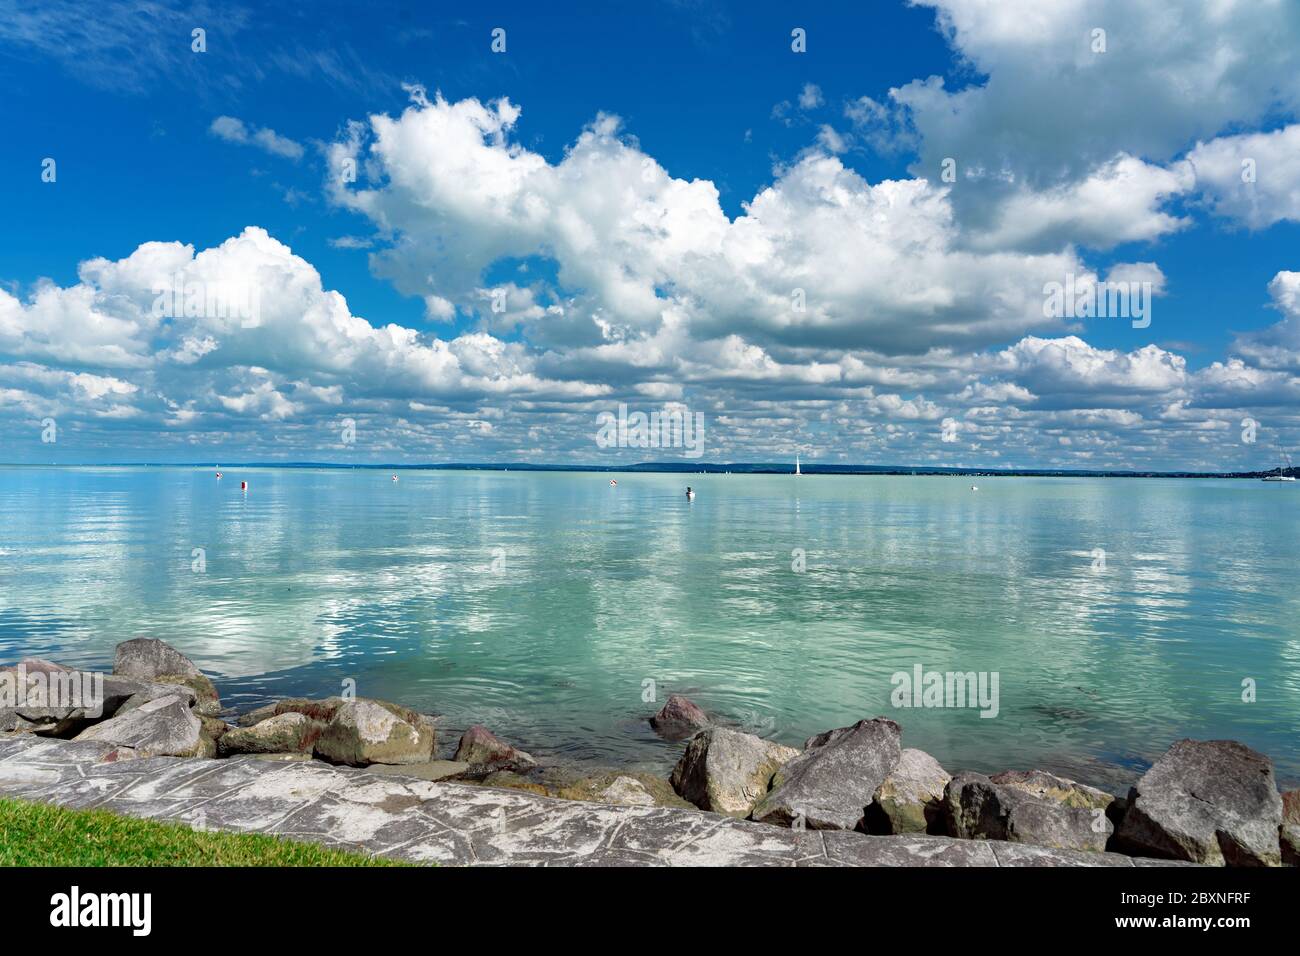 Image simple sur le lac Balaton en Hongrie depuis la plage de Badacsony avec ciel bleu et remplissage de nuages sur l'eau Banque D'Images